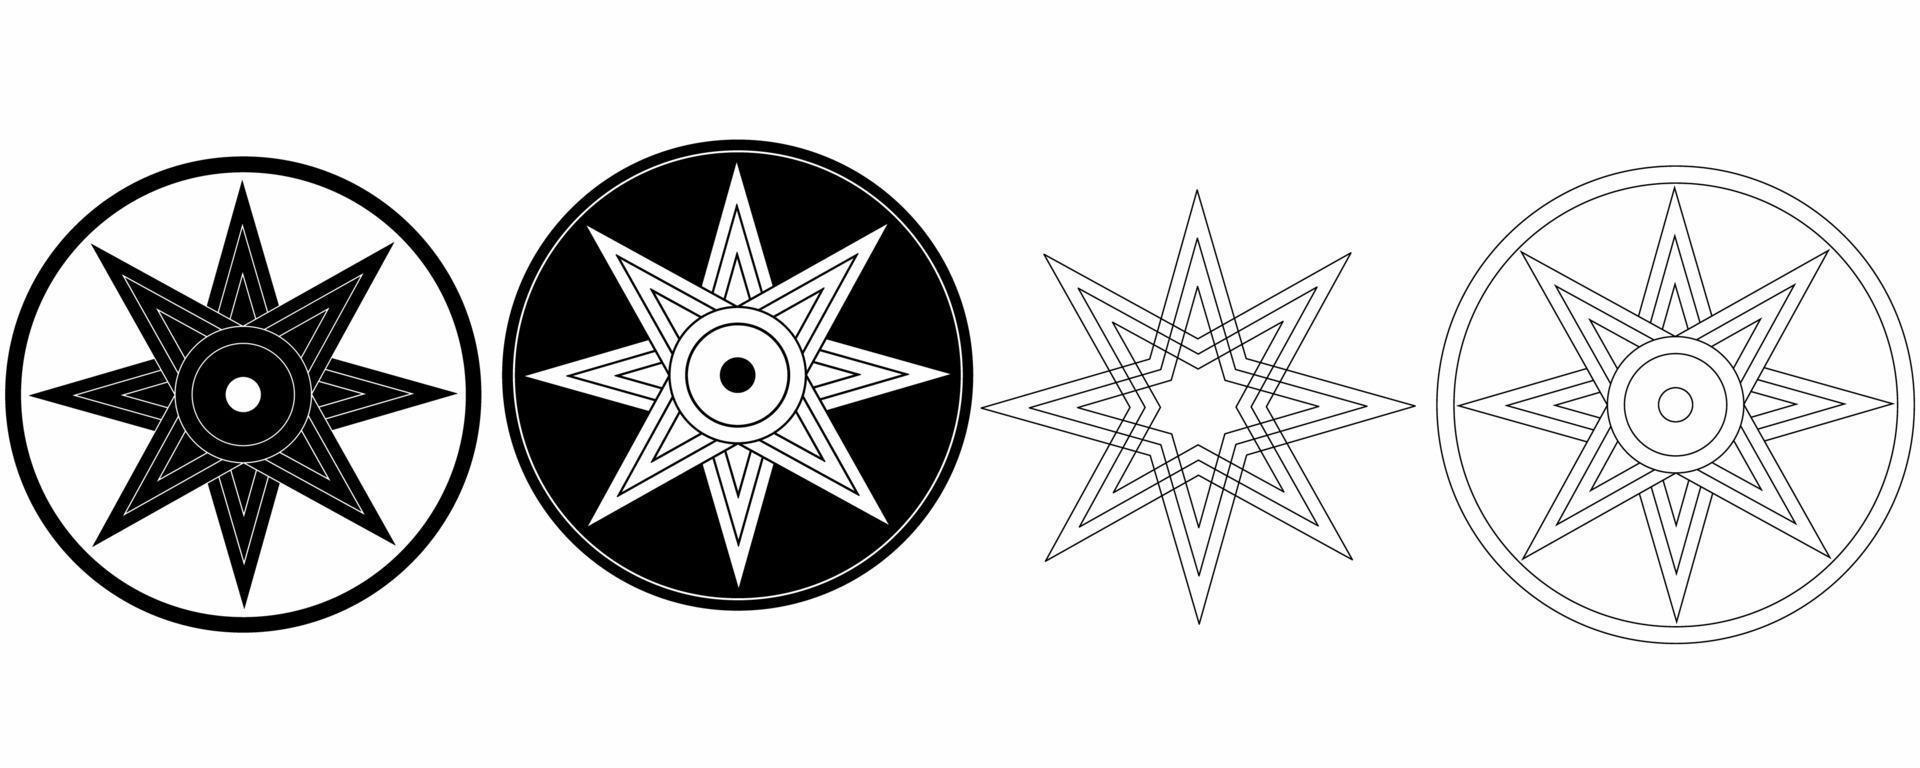 stjärna av ishtar symbol.åtta punkt stjärna eller variant av ishtar oktagram uppsättning isolerat på vit bakgrund vektor